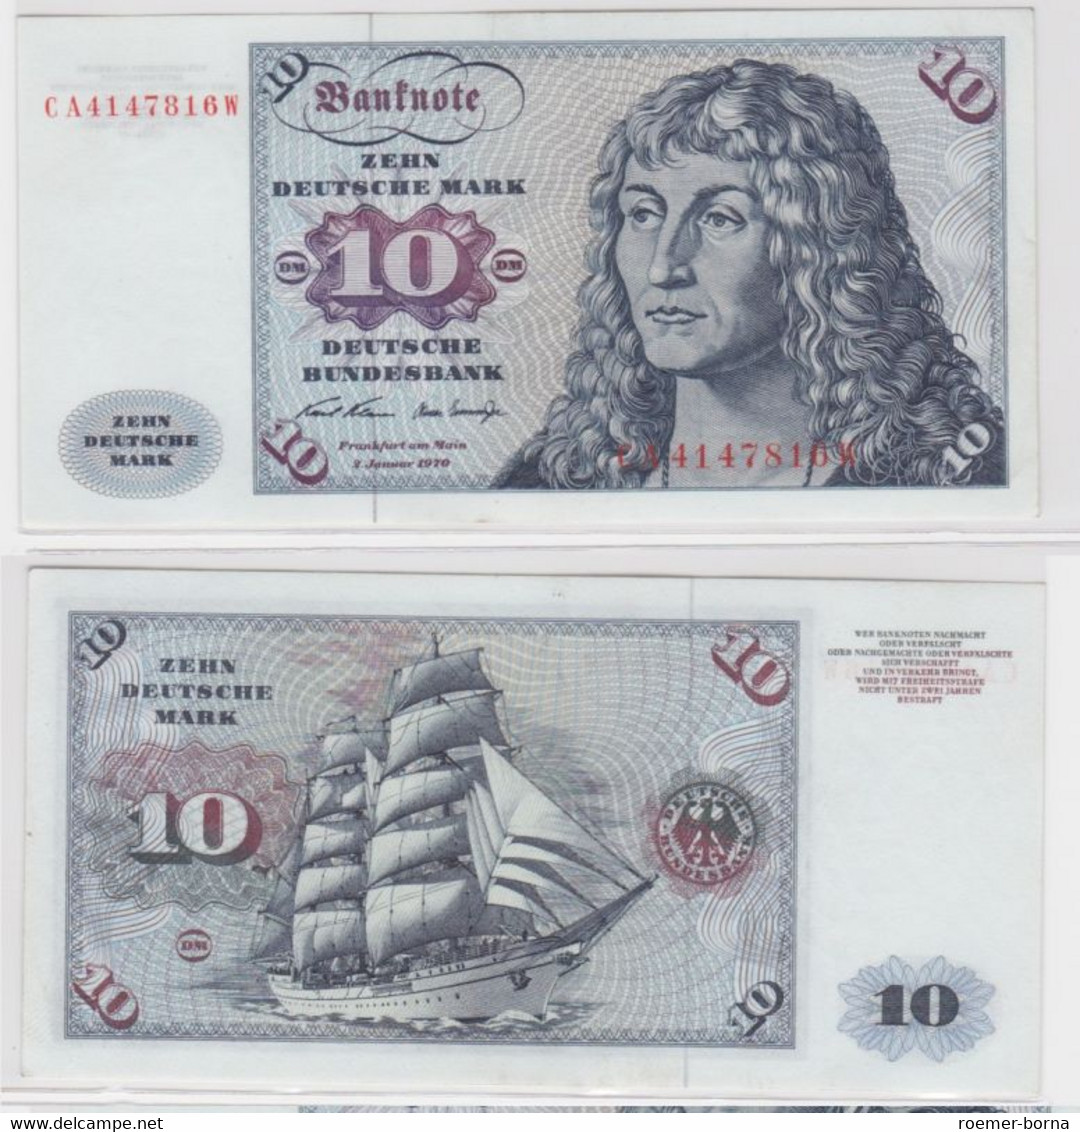 T144673 Banknote 10 DM Deutsche Mark Ro. 270a Schein 2.Jan. 1970 KN CA 4147816 W - 10 DM